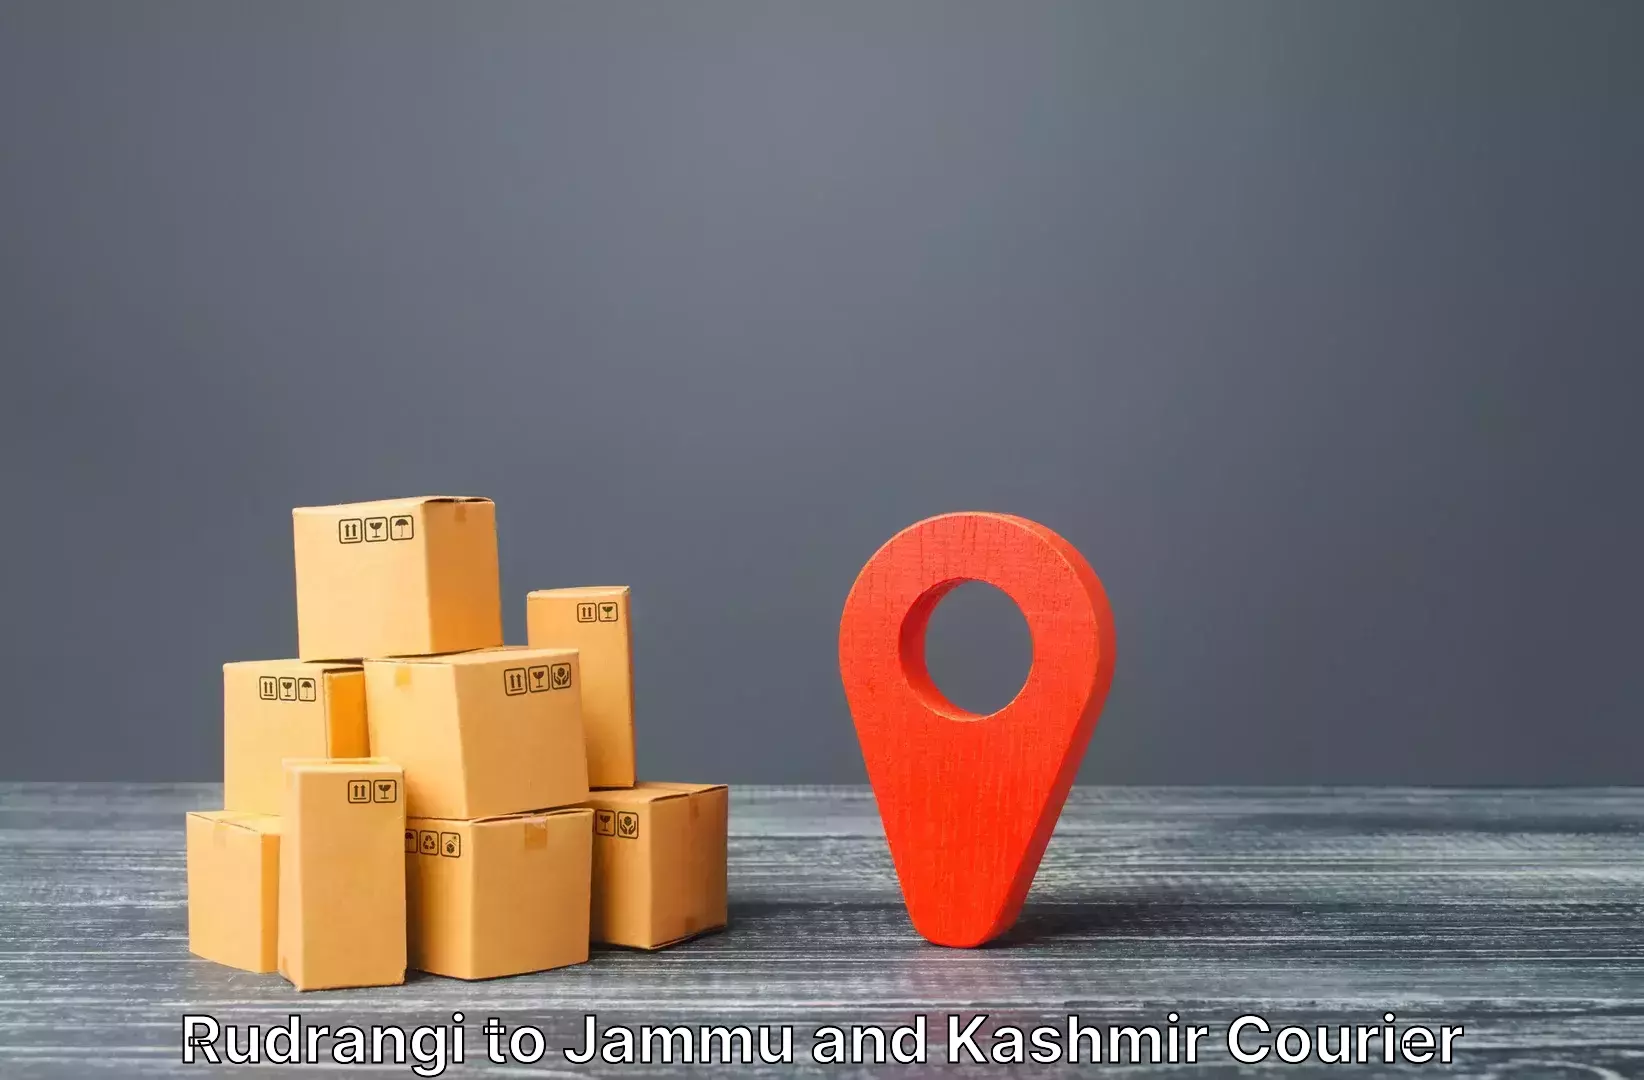 Luggage shipment processing Rudrangi to University of Jammu